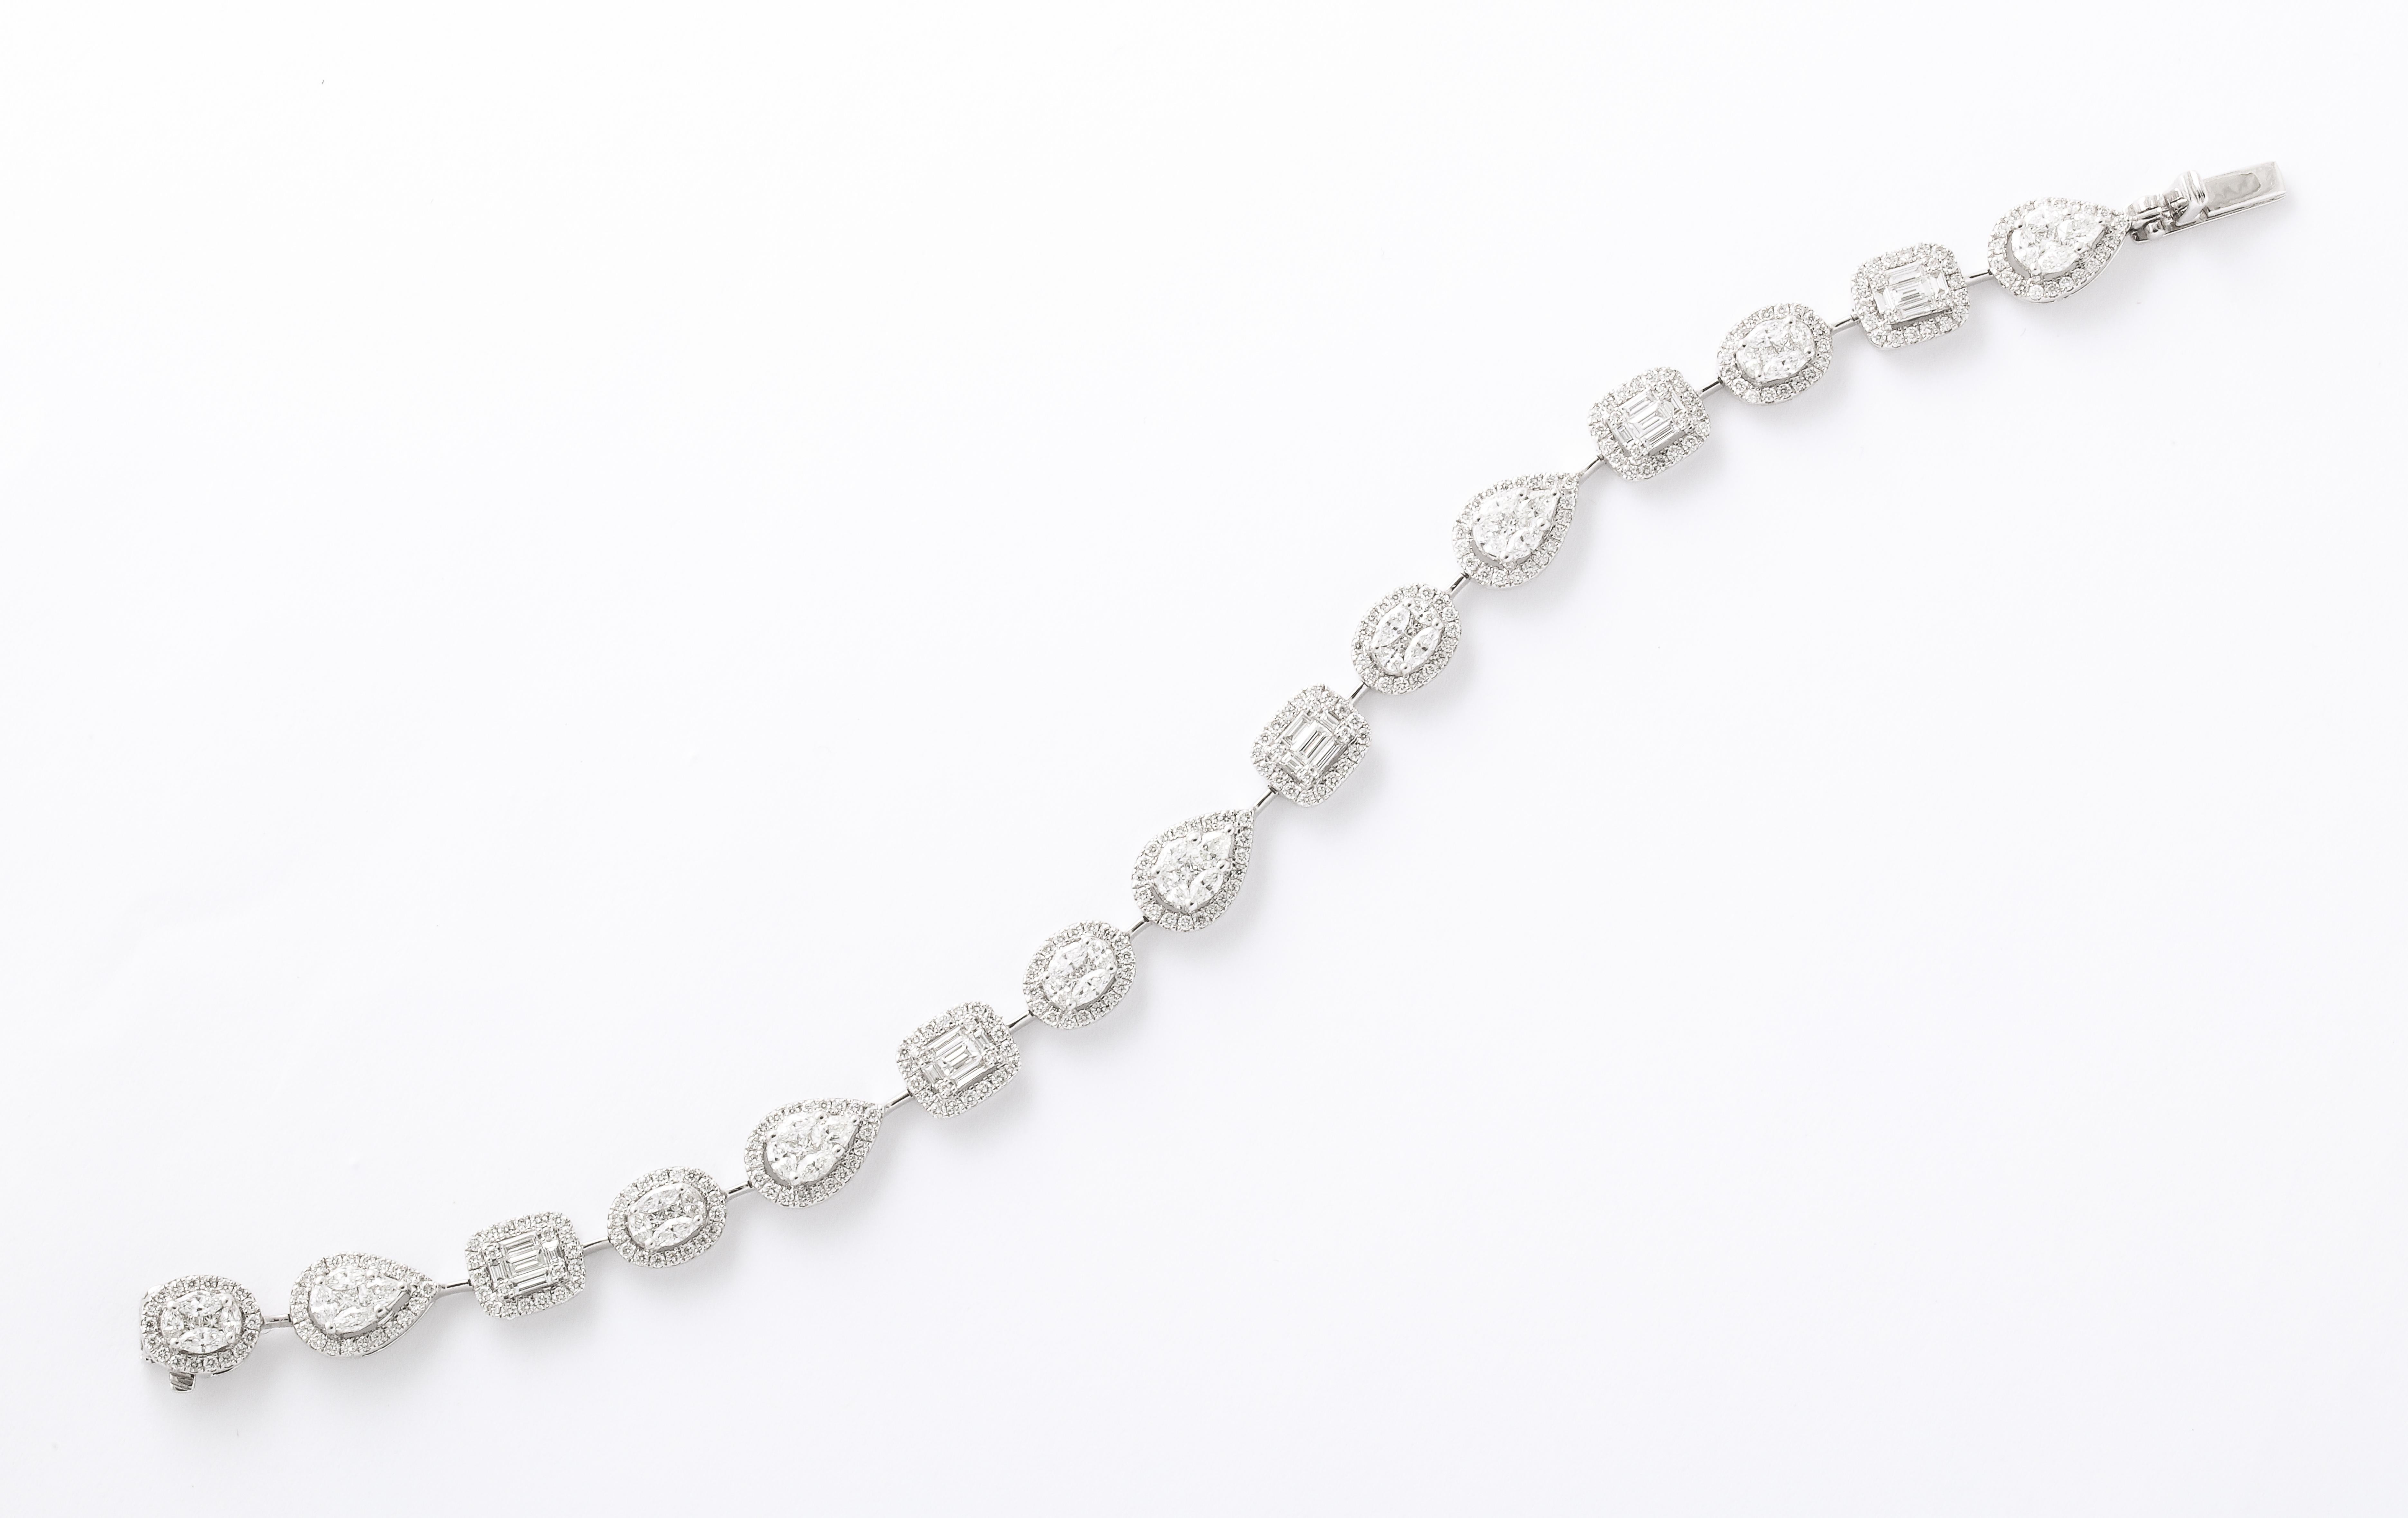 Un magnifique bracelet multiforme composé de diamants sertis en illusion. 

5,15 carats de diamants blancs.

or blanc 18k 

Longueur de 6,75 pouces. 